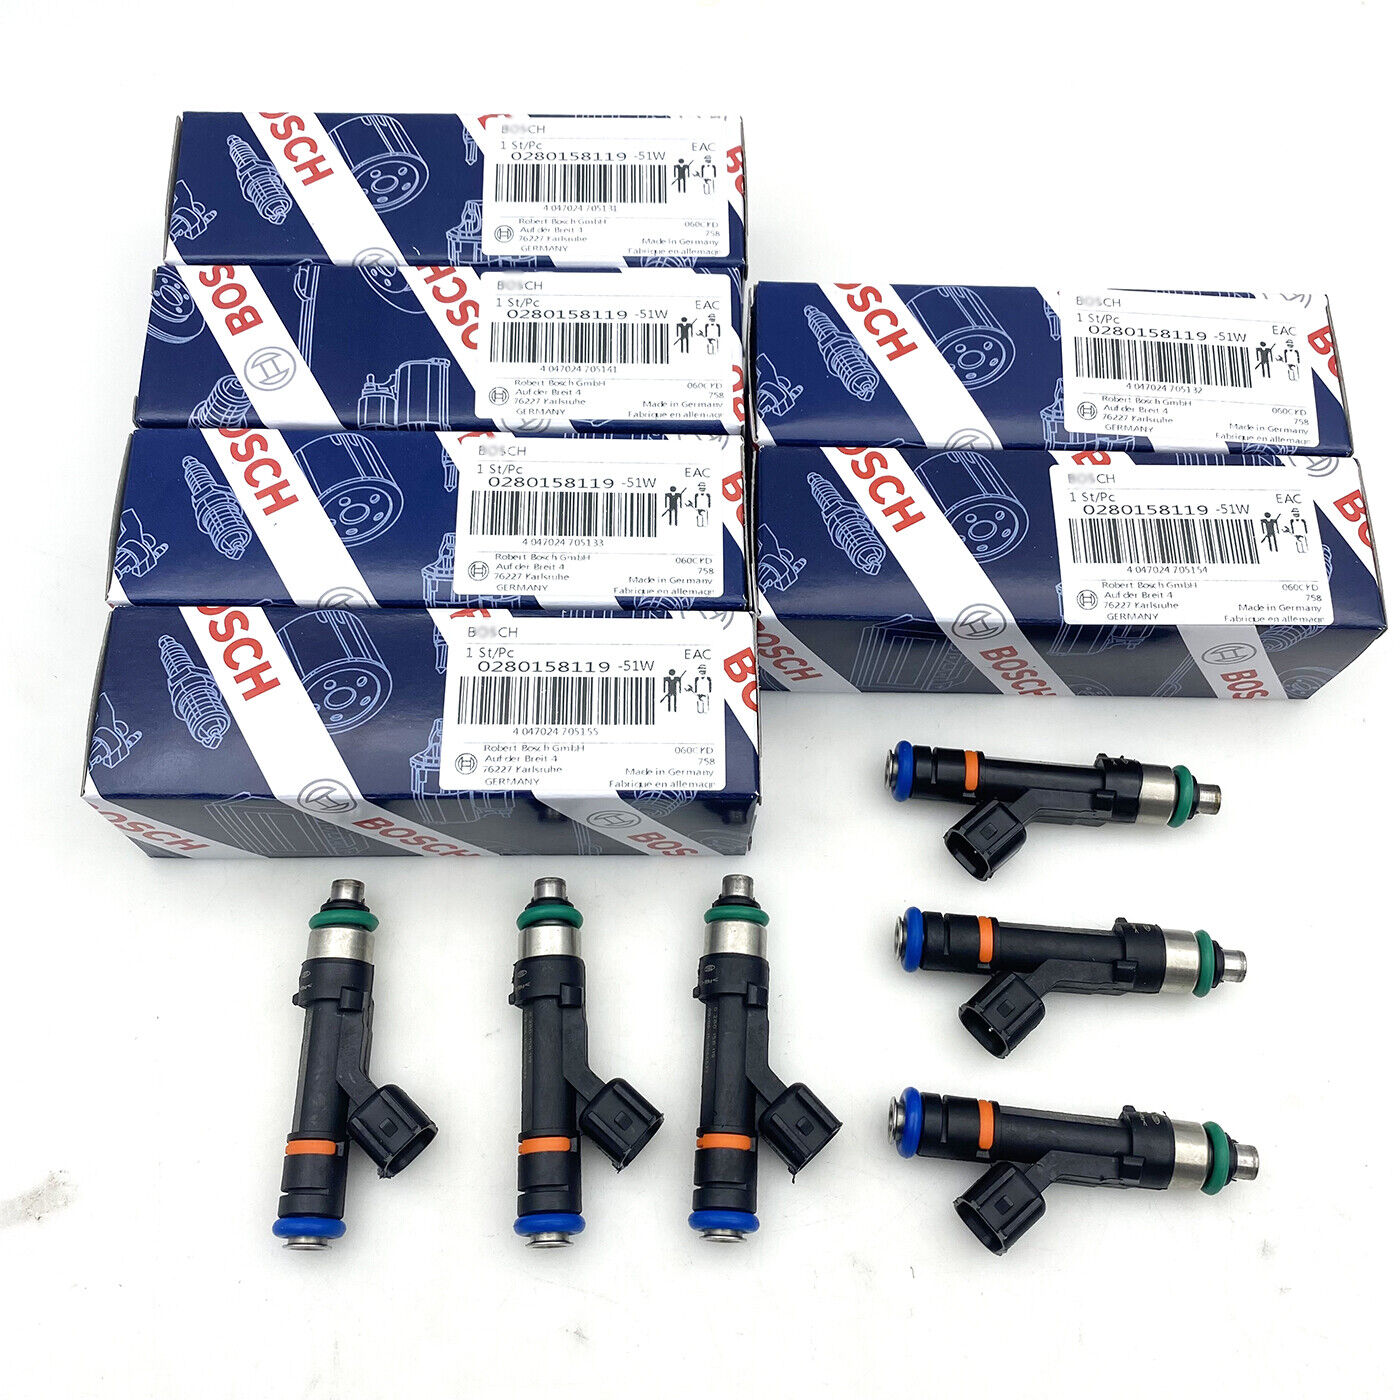 6pcs Fuel Injectors 0280158119 Fits for 07-11 Jeep Wrangler 3.8L 04861667AA New